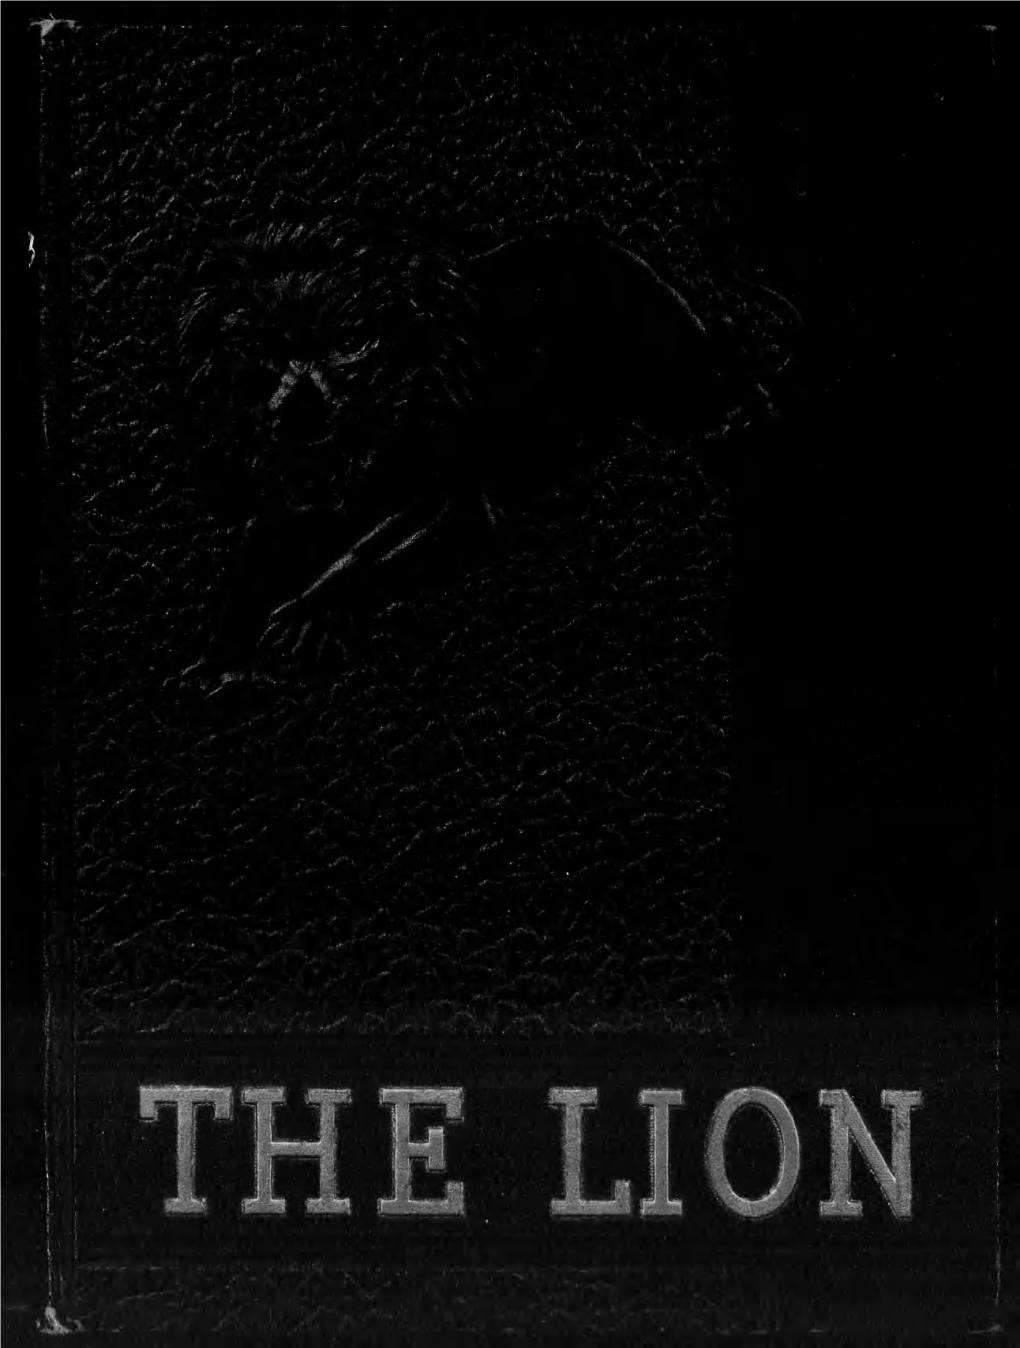 The 1943 Lion $ Oe